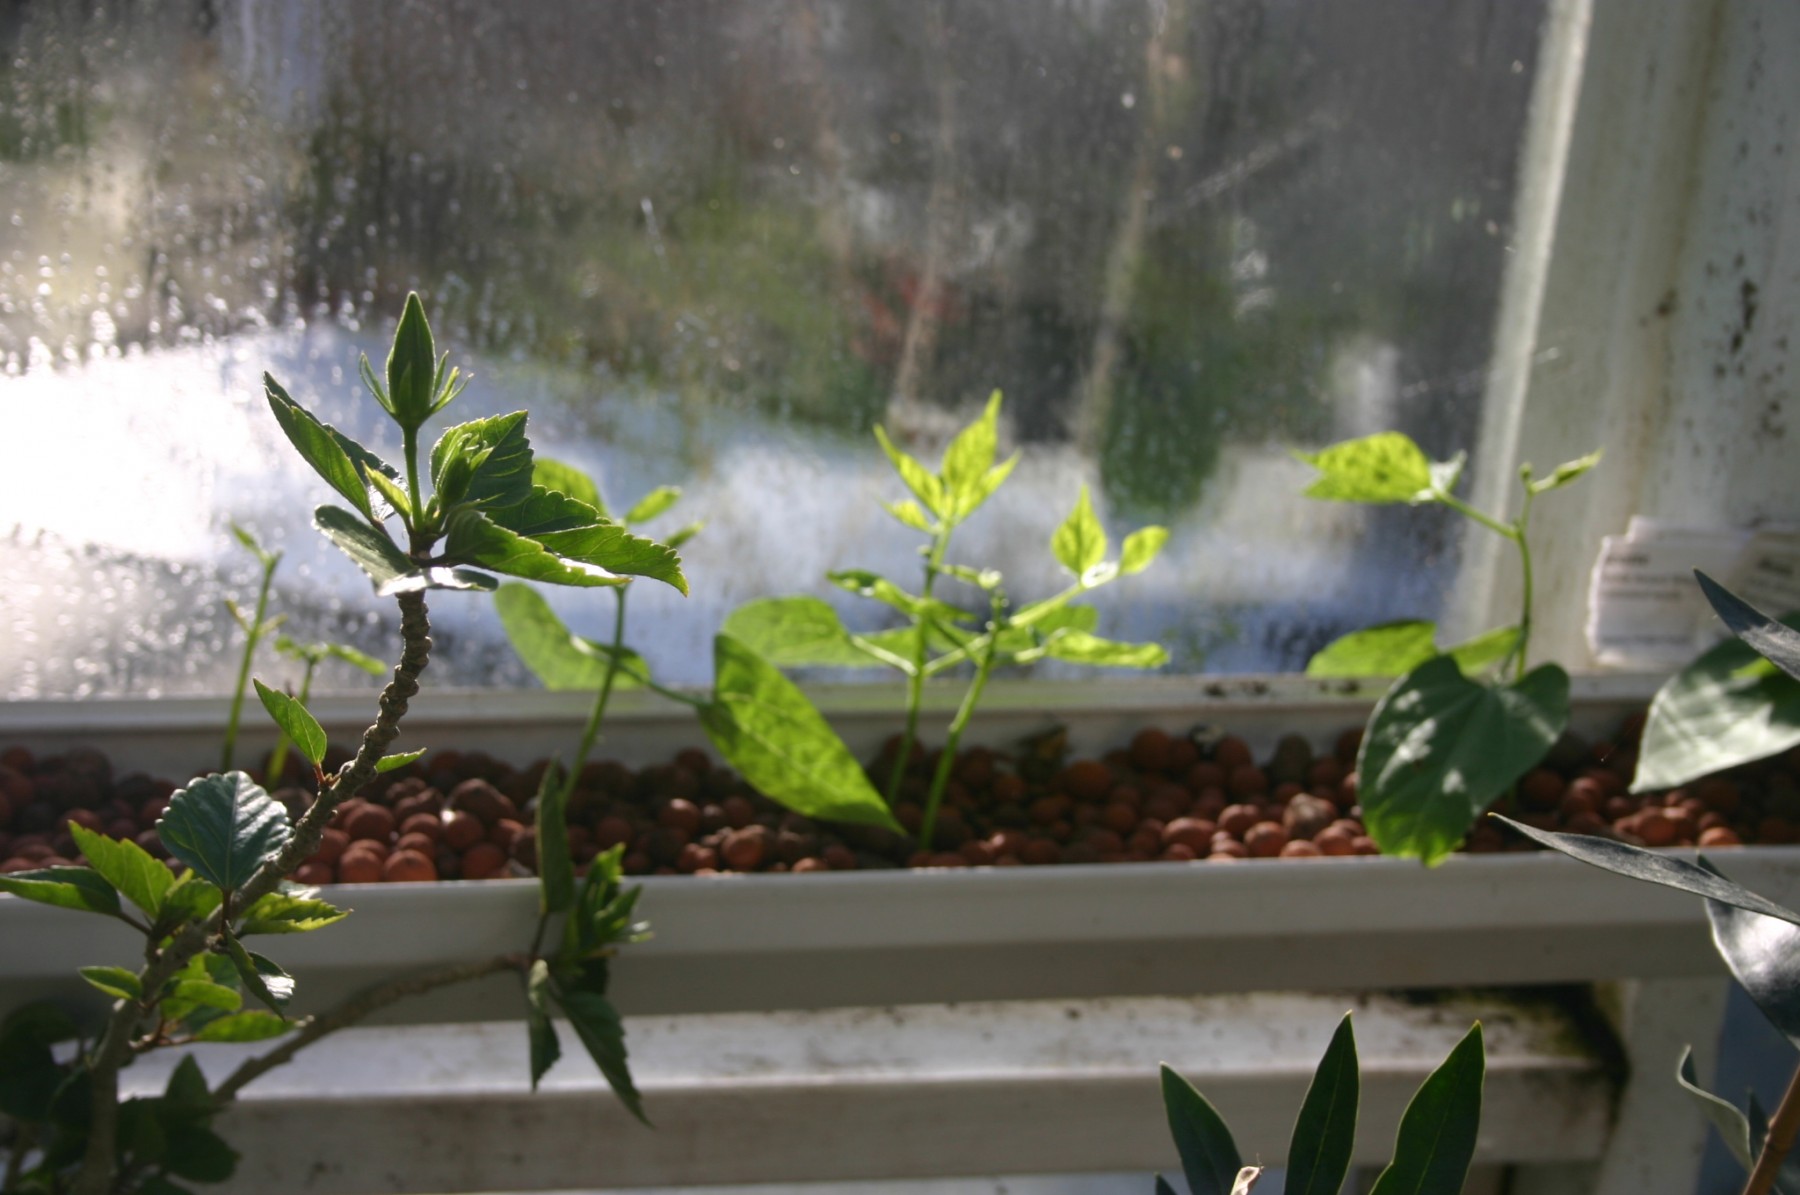 Bean plants in hydroponic gutters